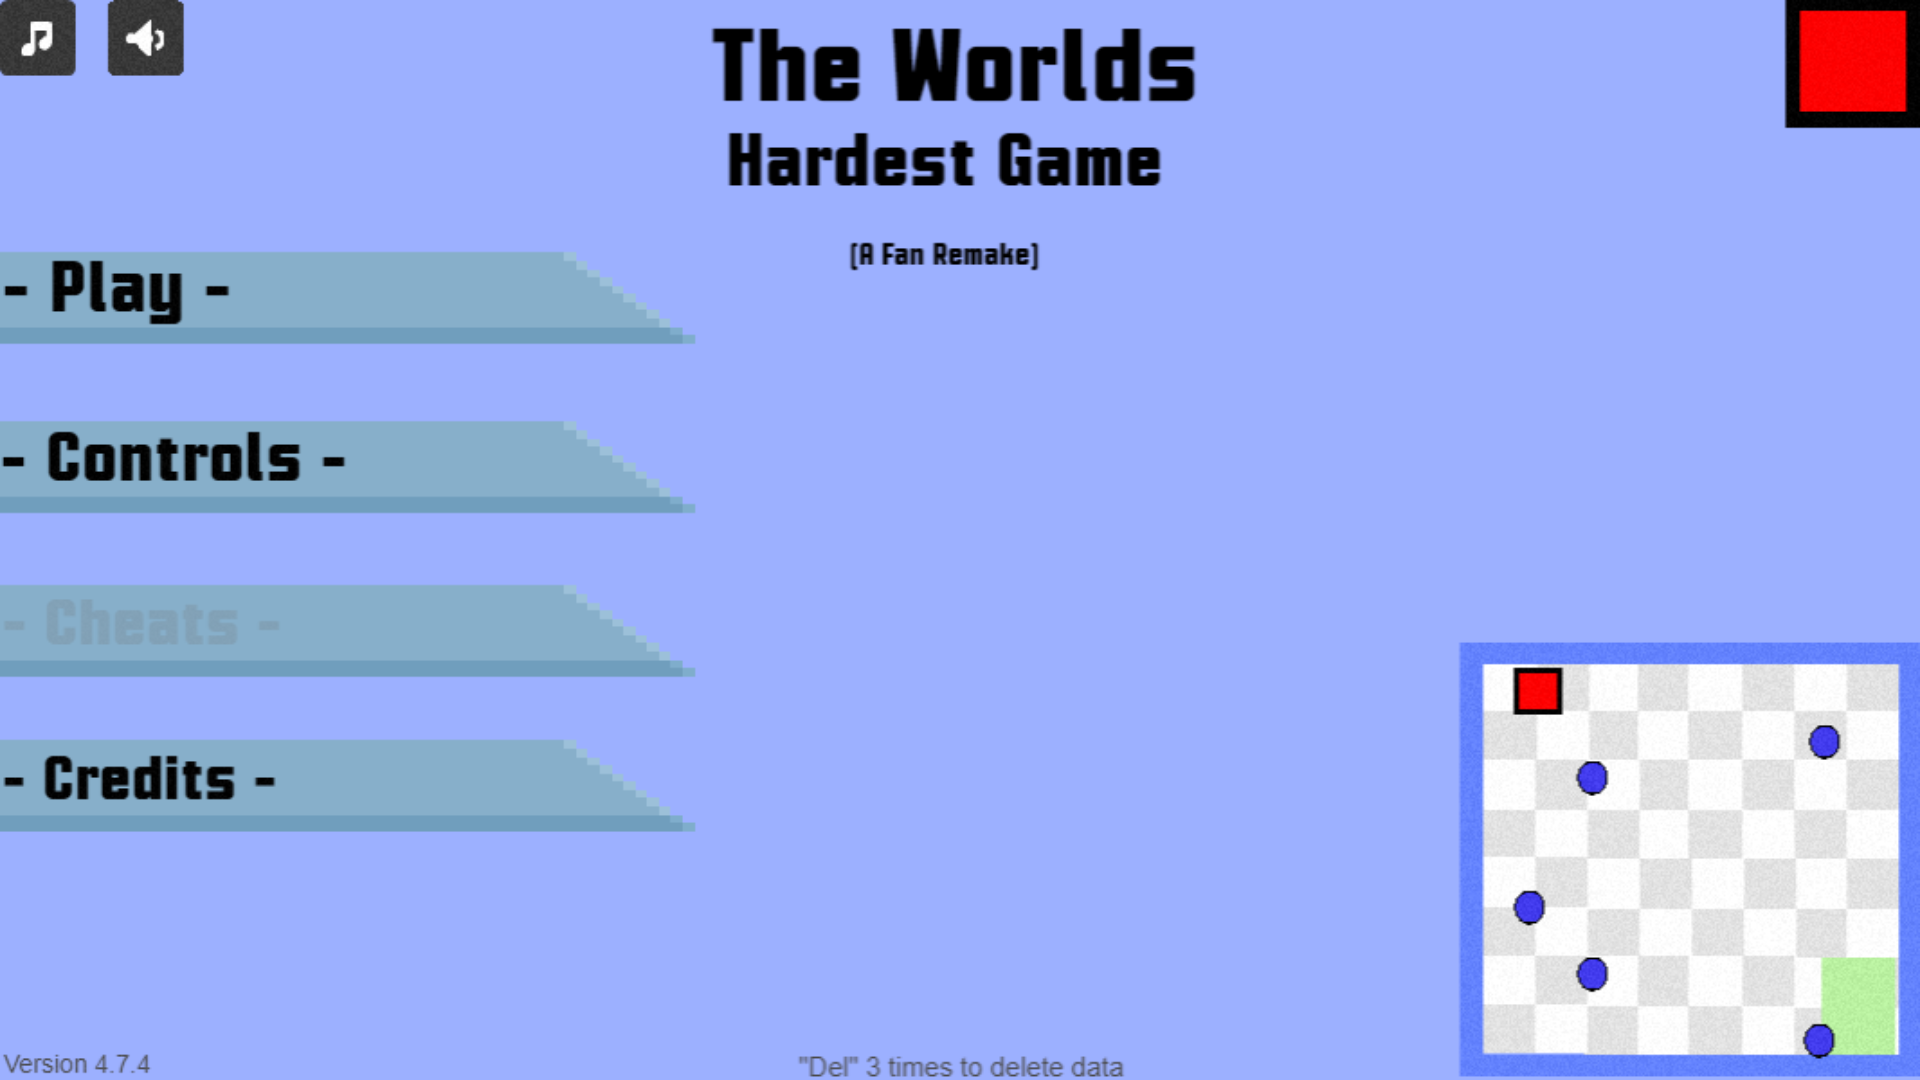 Worlds Hardest Fan Game